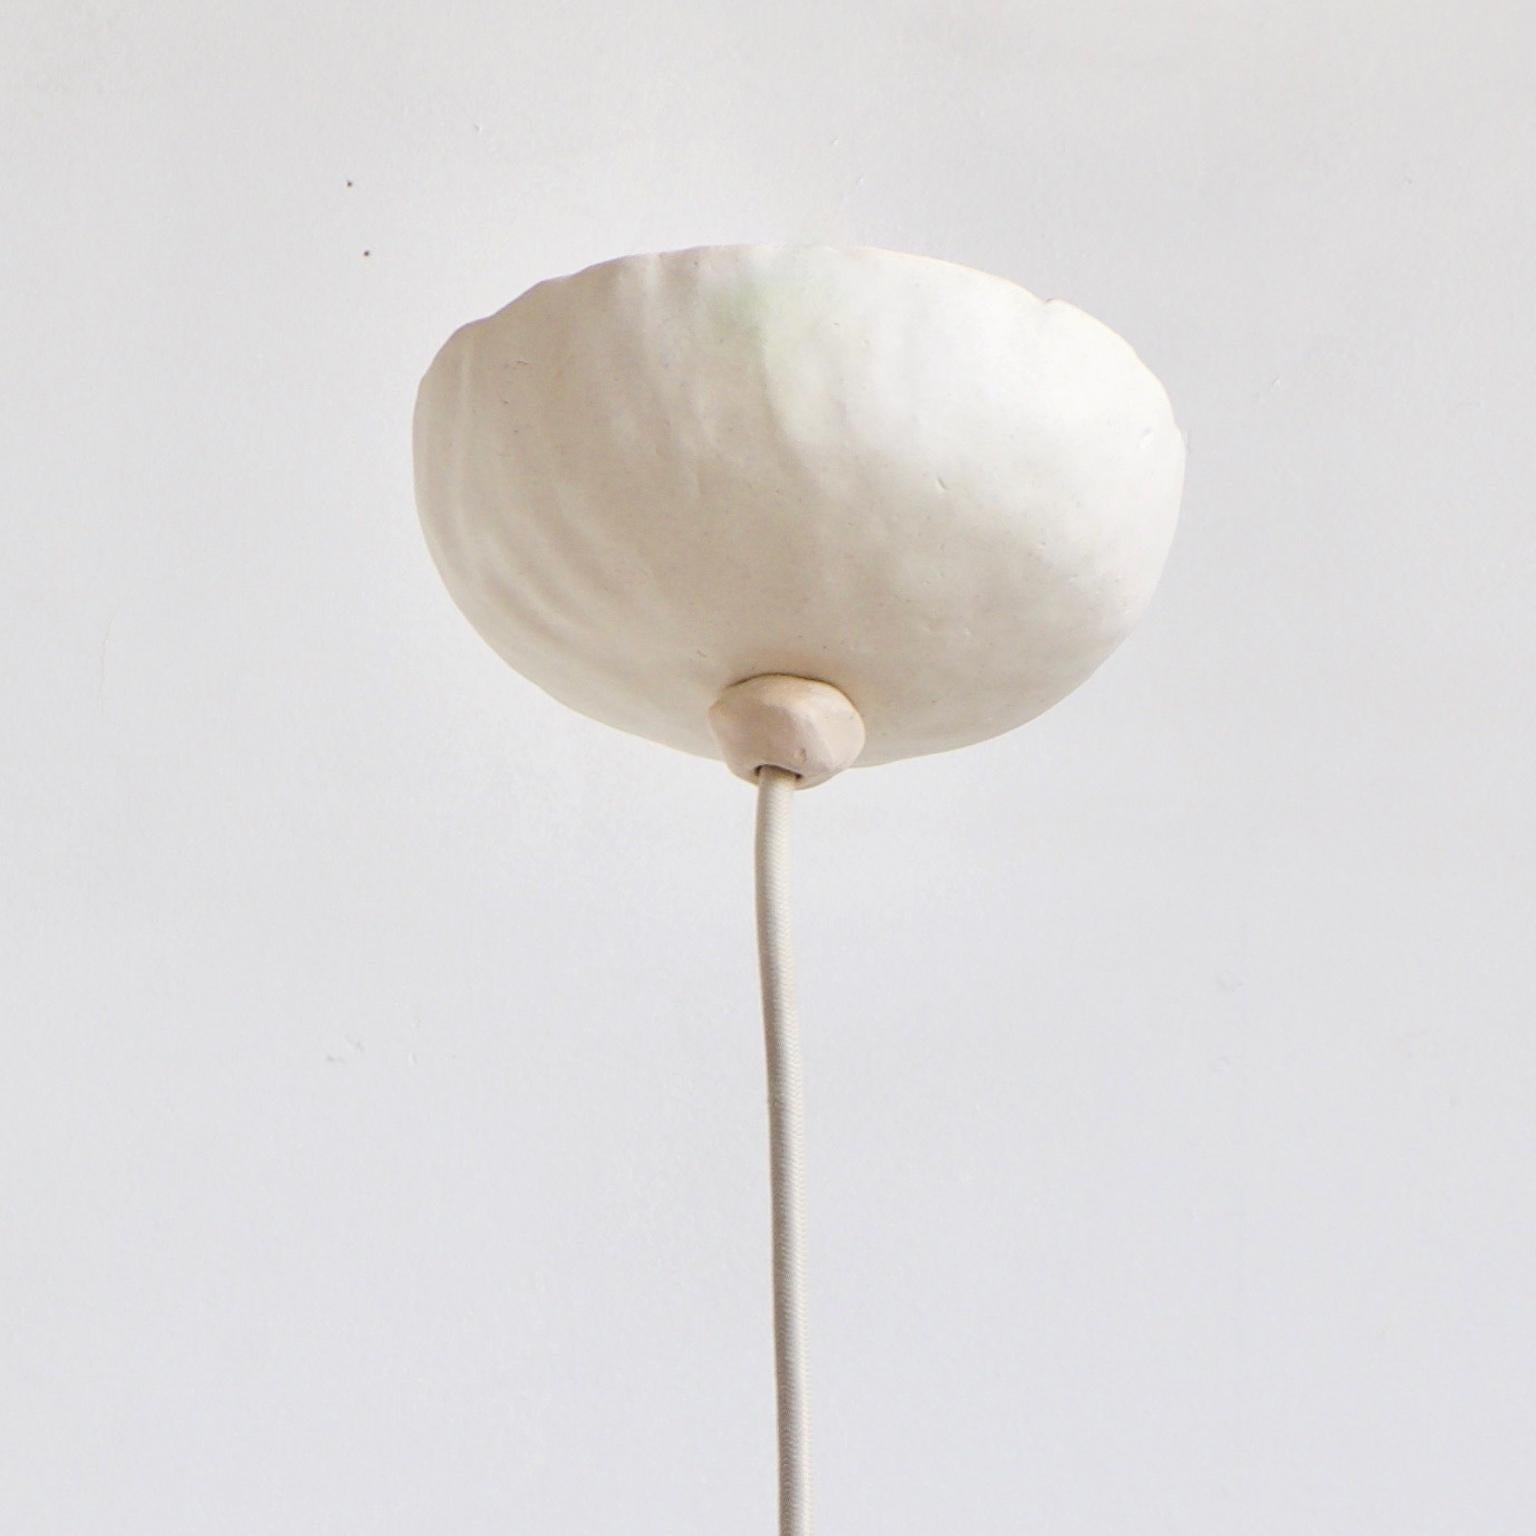 White Bowerbird single est une lampe pendante contemporaine en céramique fabriquée à la main et dotée d'une glaçure blanche mate. Une lueur chaude se reflète sur une forme ronde et joyeuse. La forme conviviale et humoristique constitue un accent